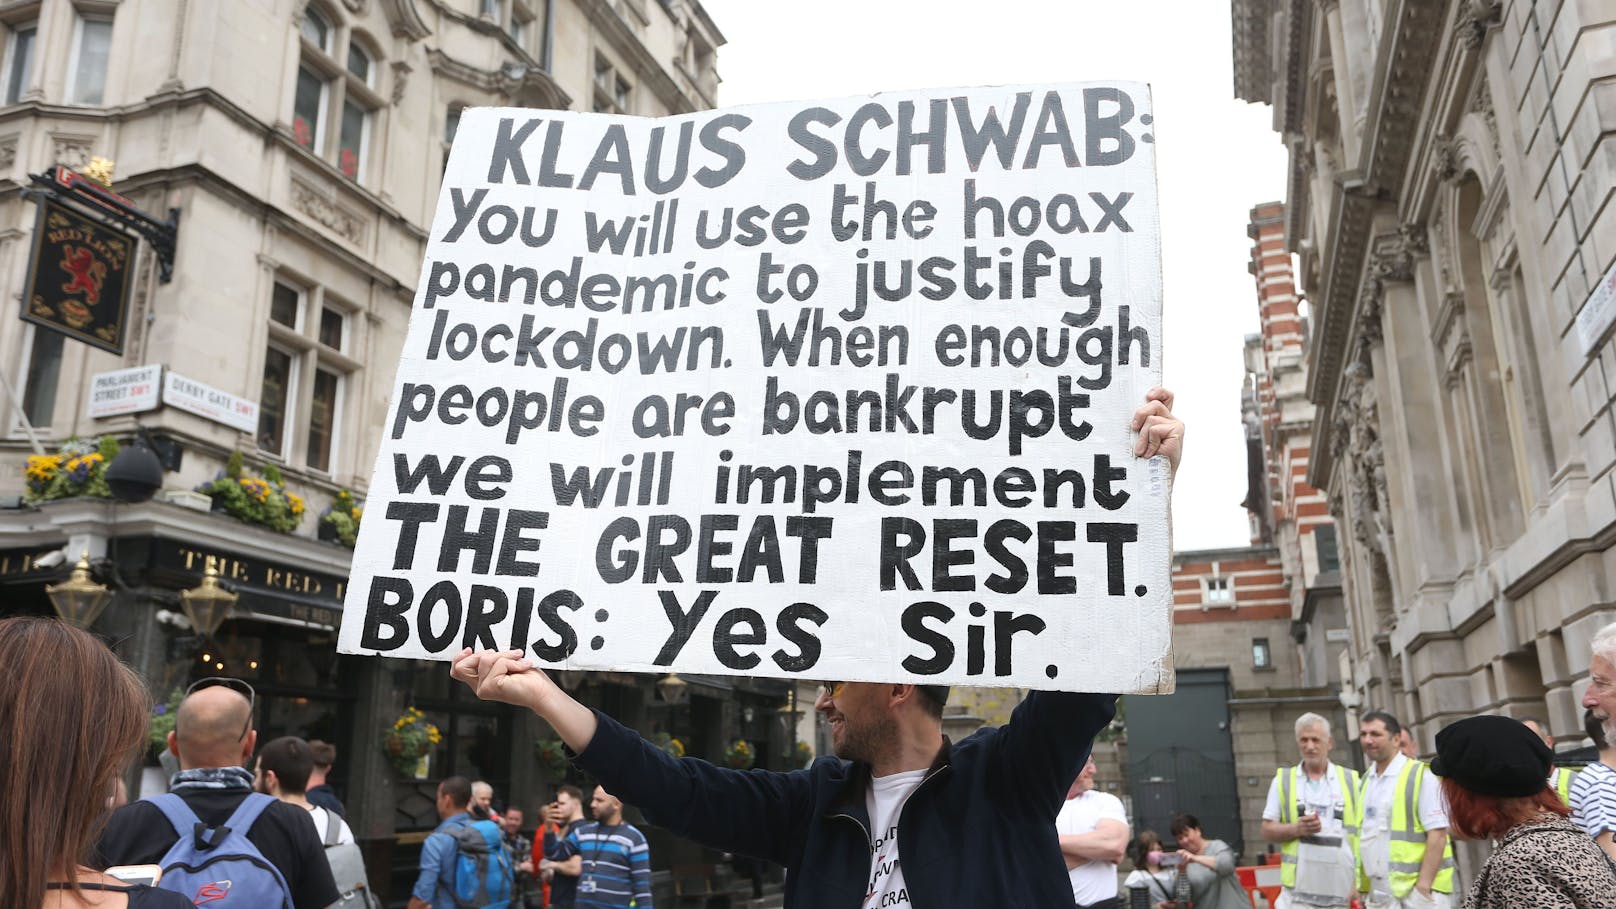 London, 29. Mai 2021: Die Lockdown-Proteste waren auch in Großbritannien durchsetzt mit Verschwörungserzählungen eines "Great Reset" durch eine "globalistische Machtelite" mittels angeblich künstlich erzeugter Krisen.